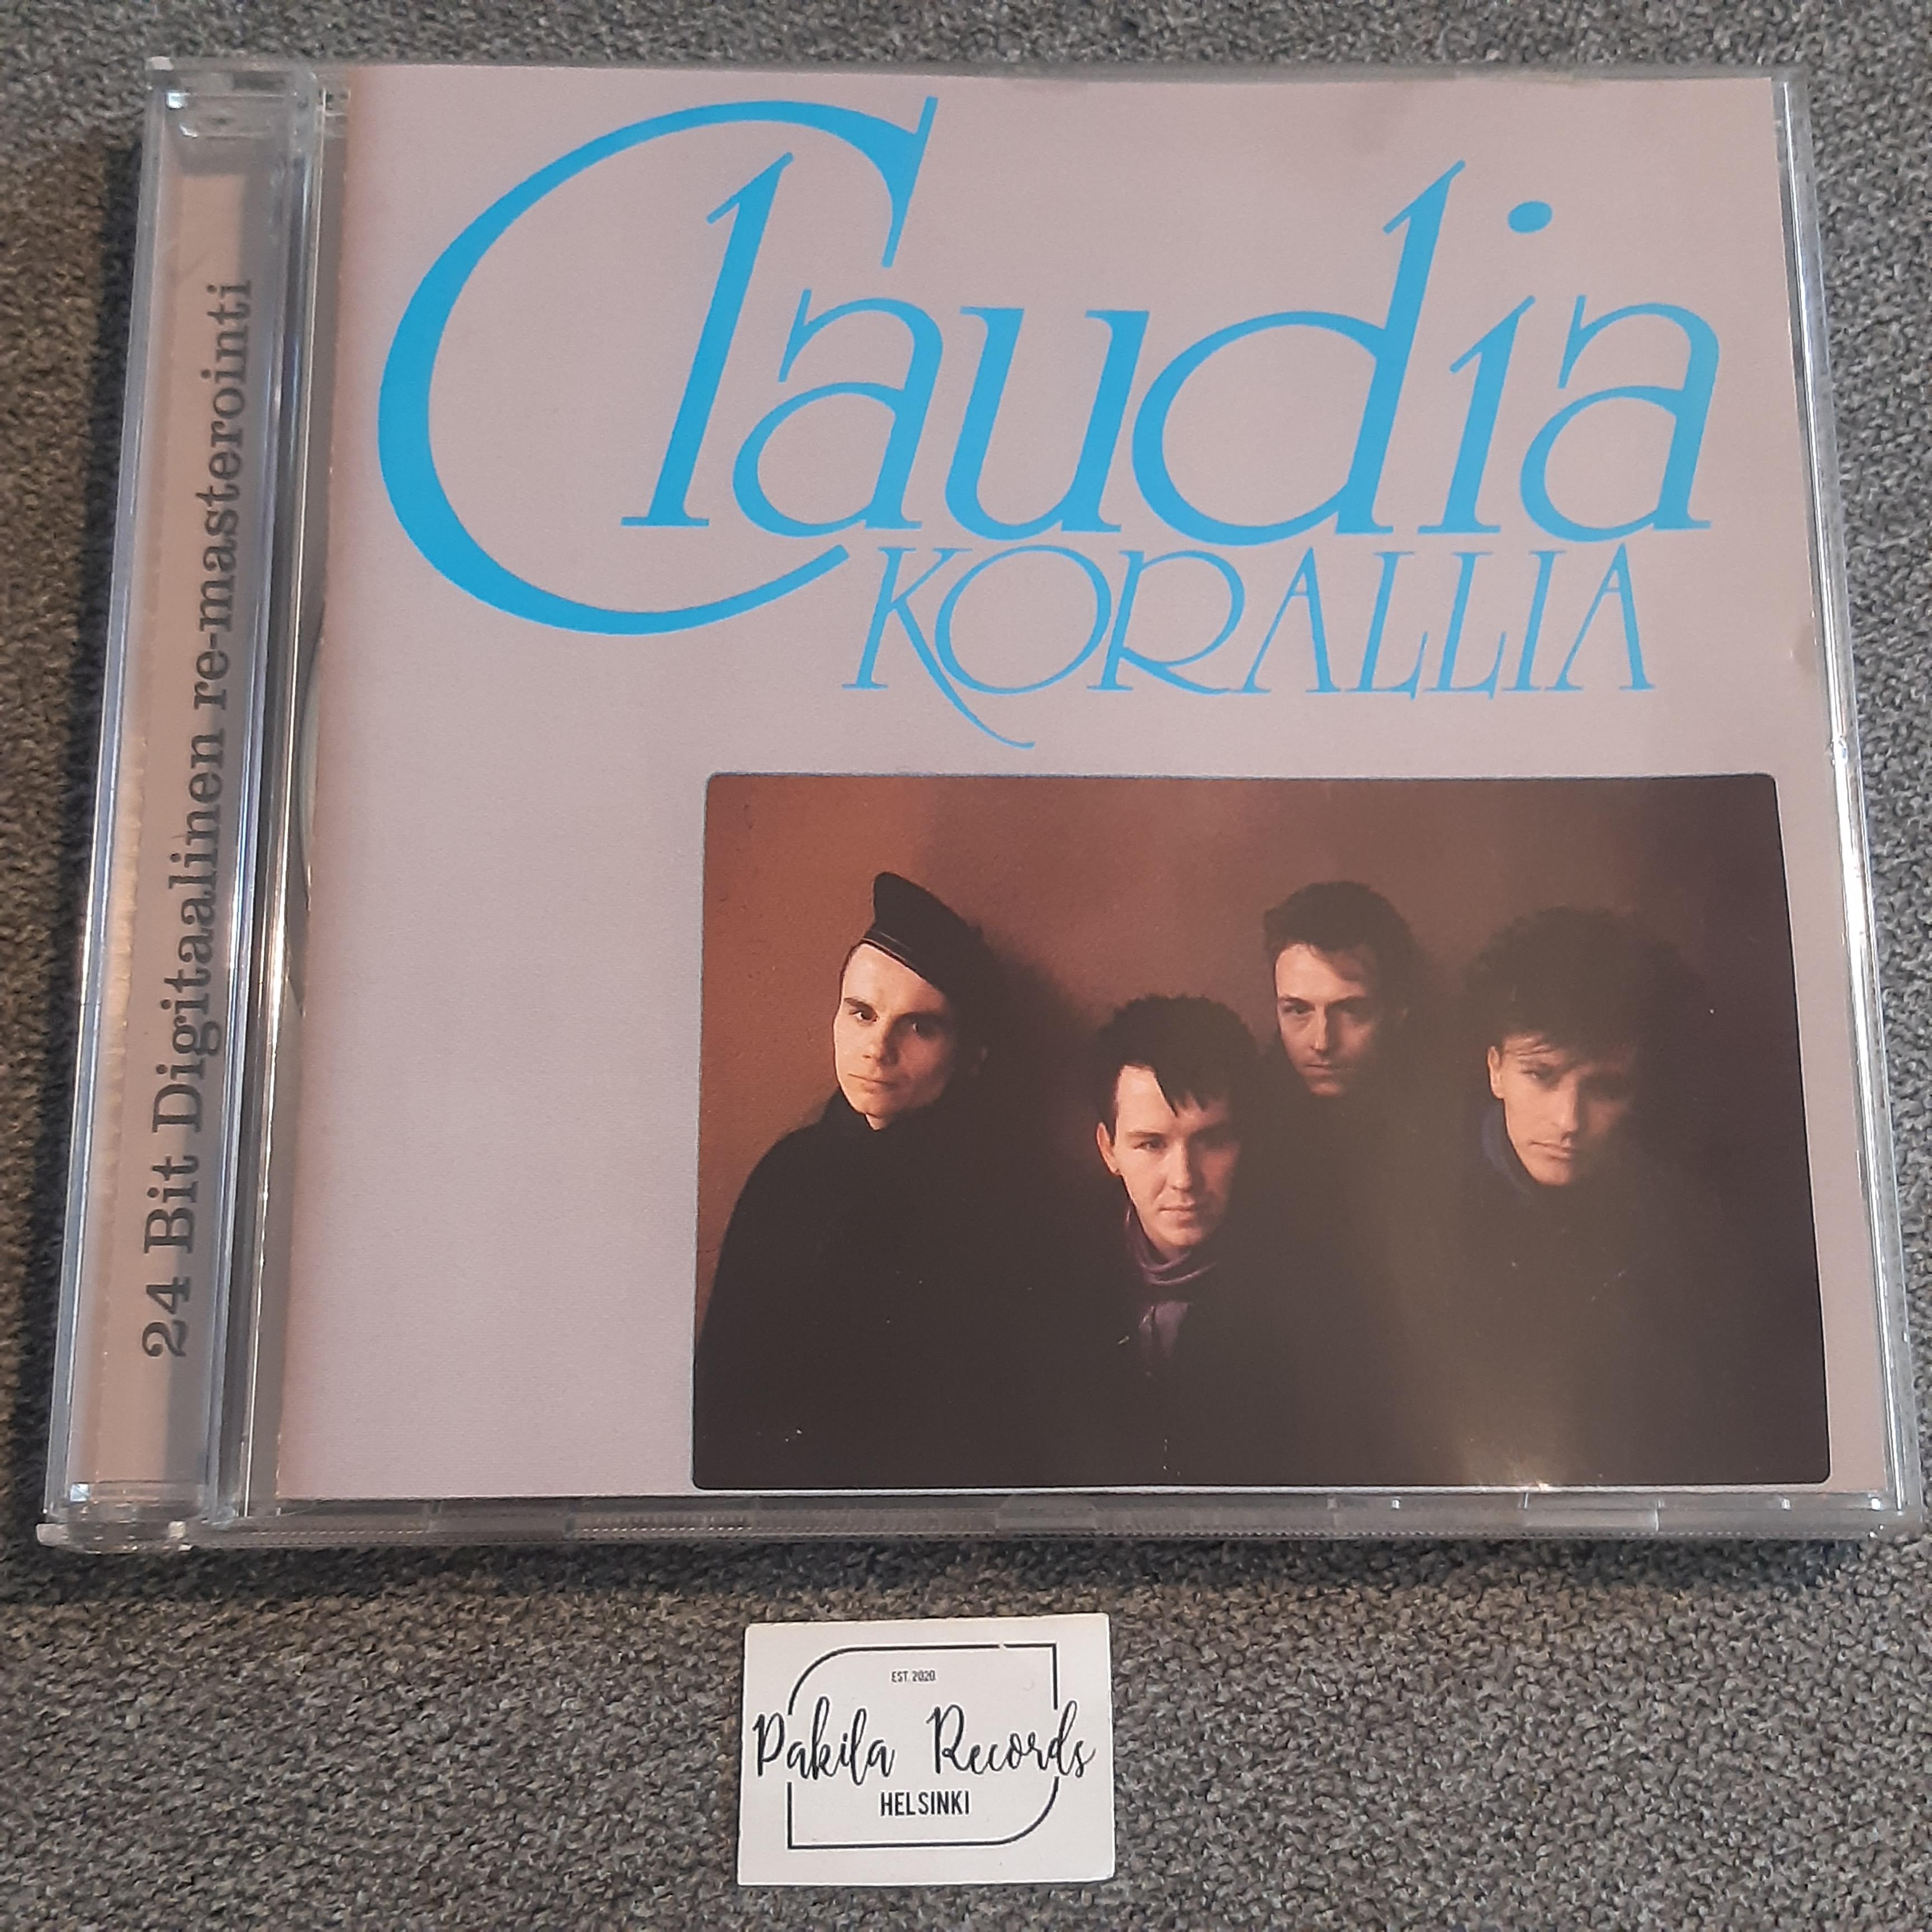 Claudia - Korallia - CD (käytetty)